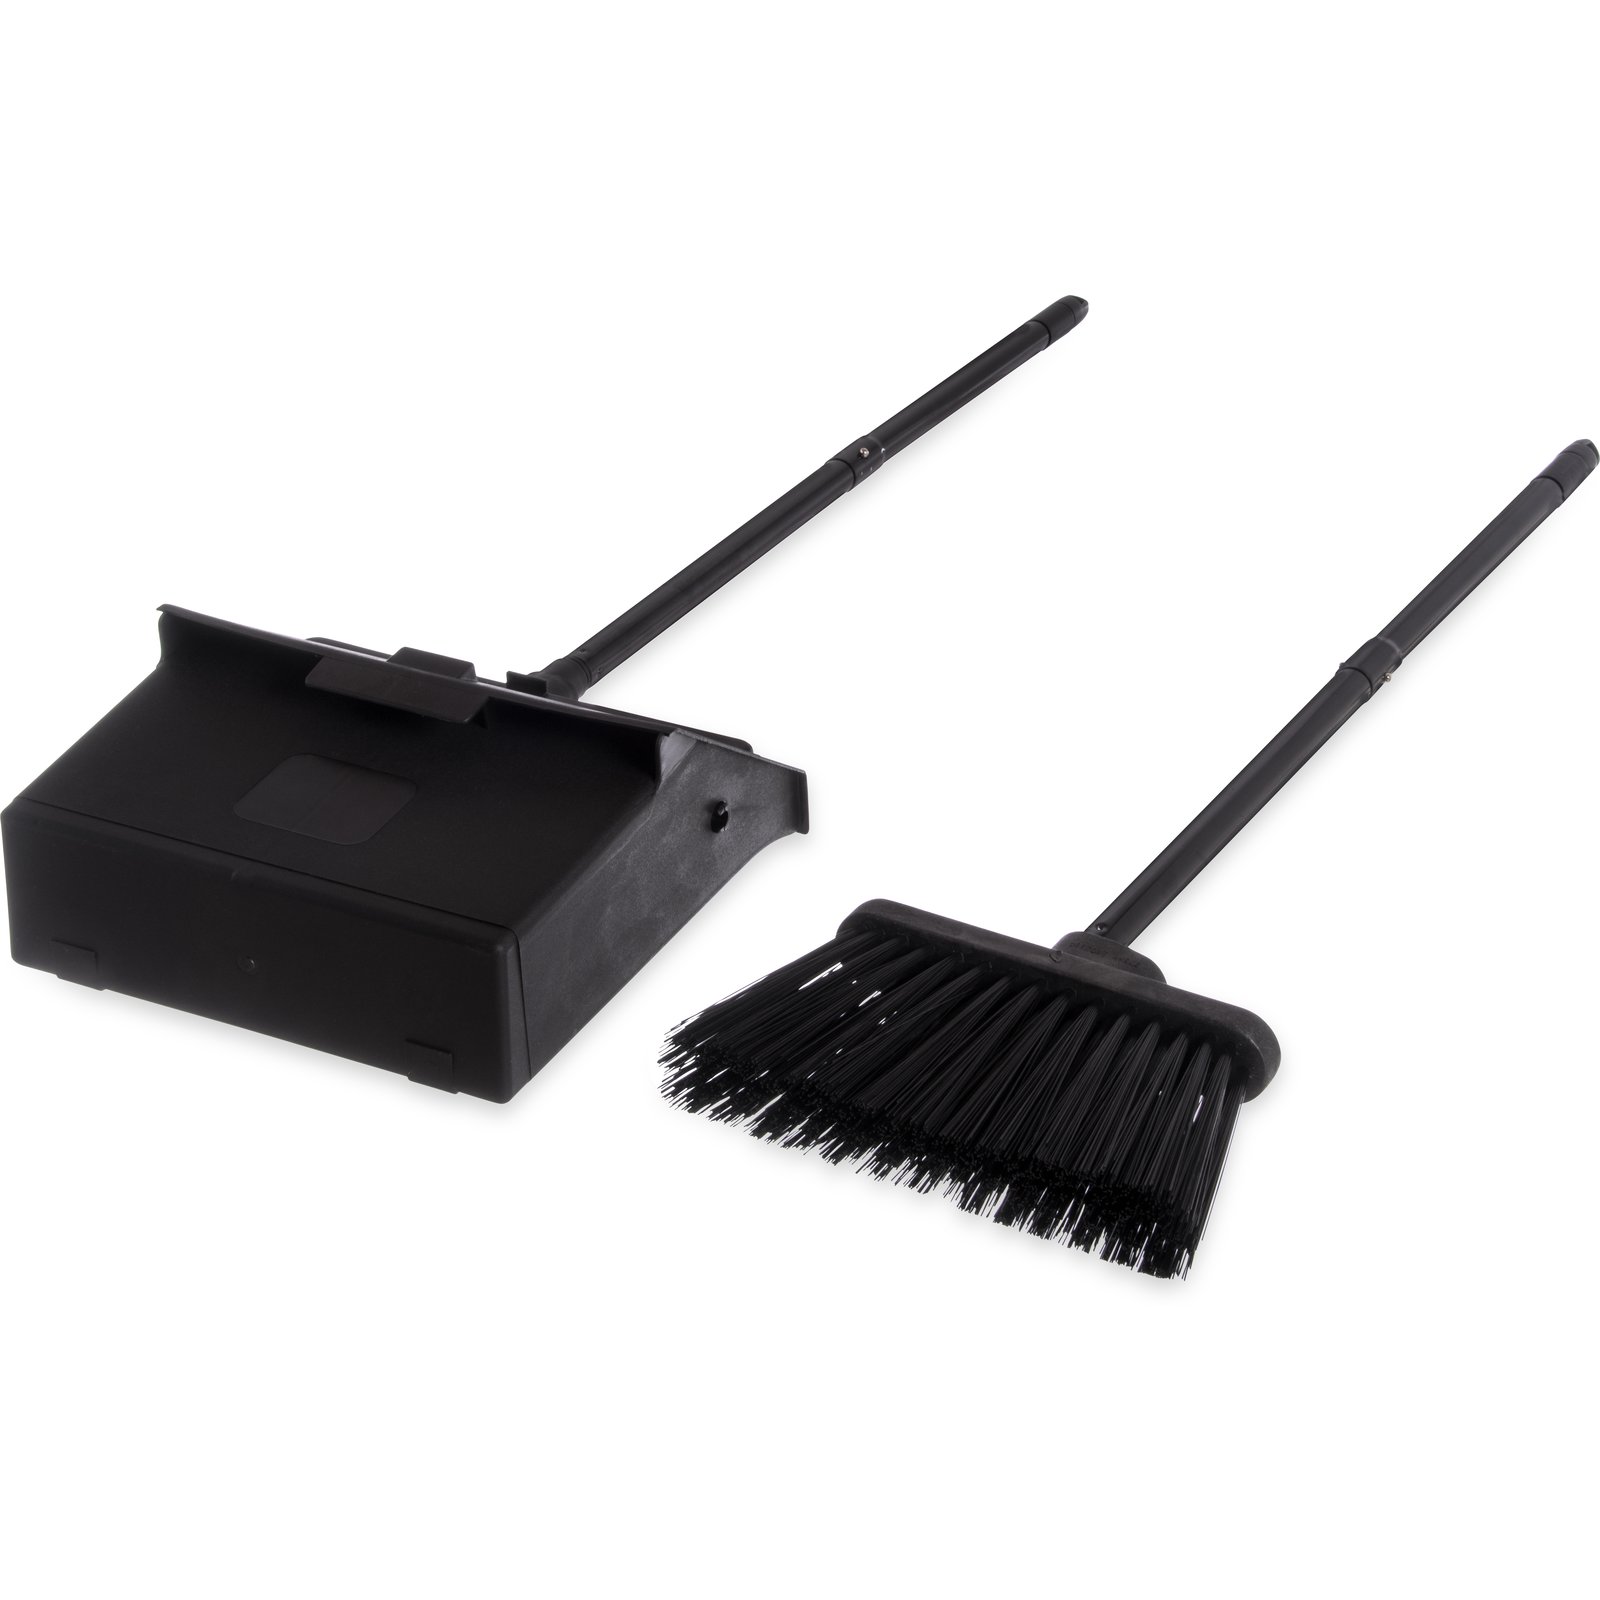 Pan Cleaning Brush SCB460 –